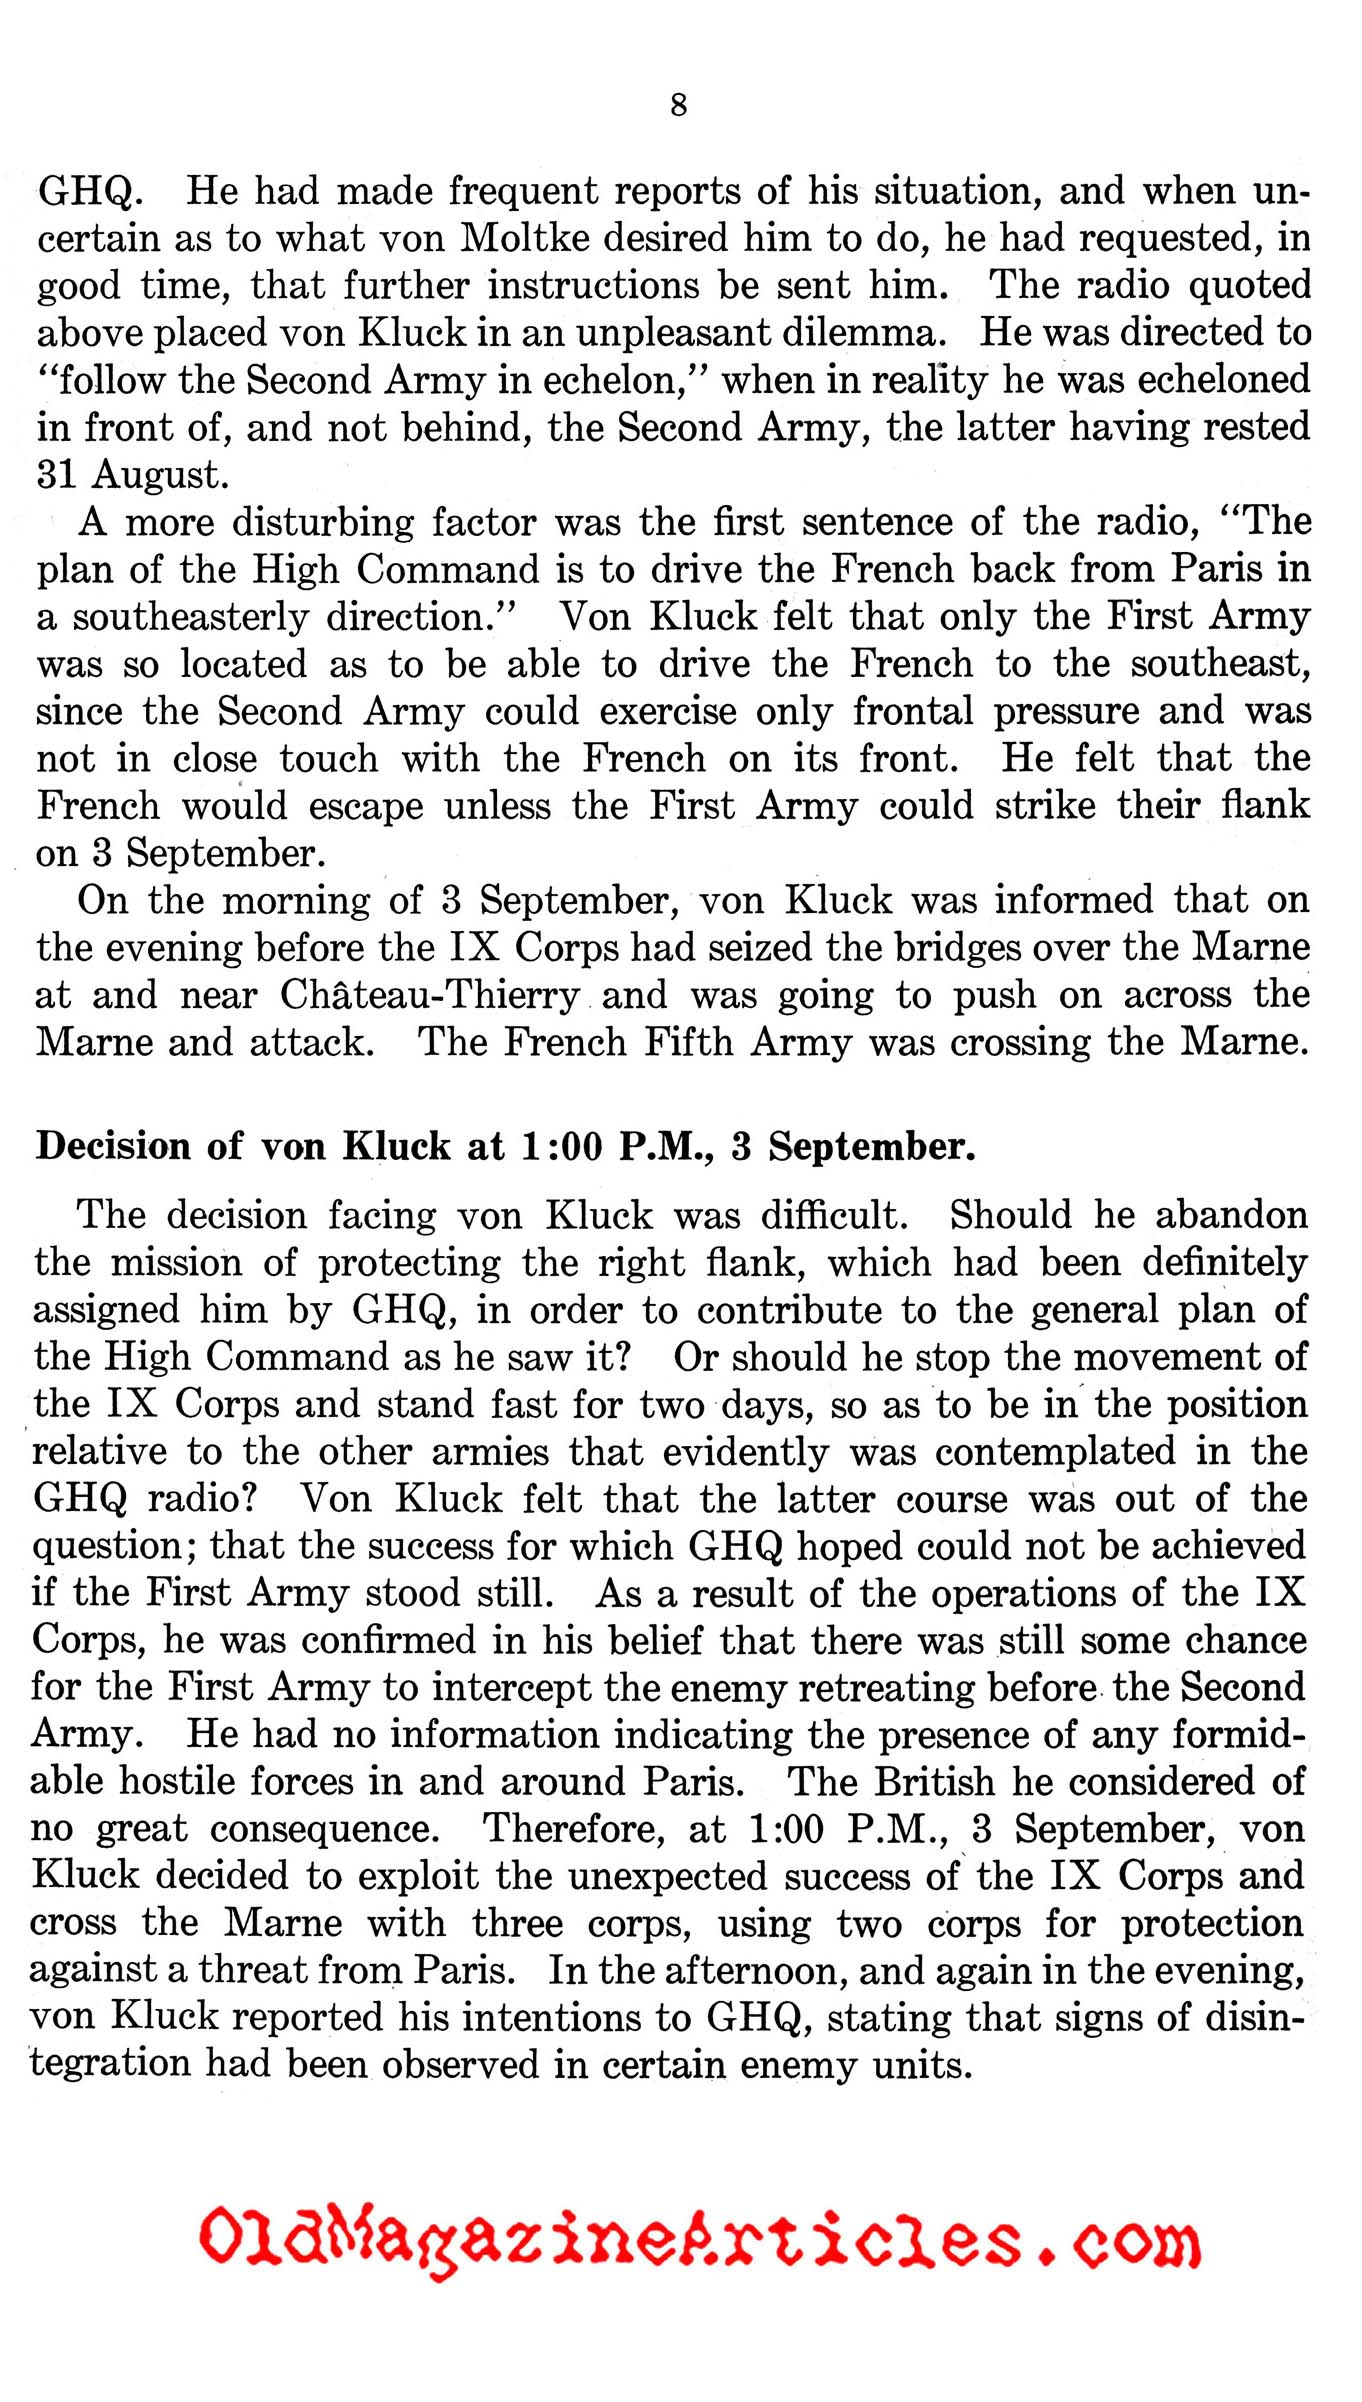 Von Kluck's Drive on Paris (West Point Supplement, 1944)